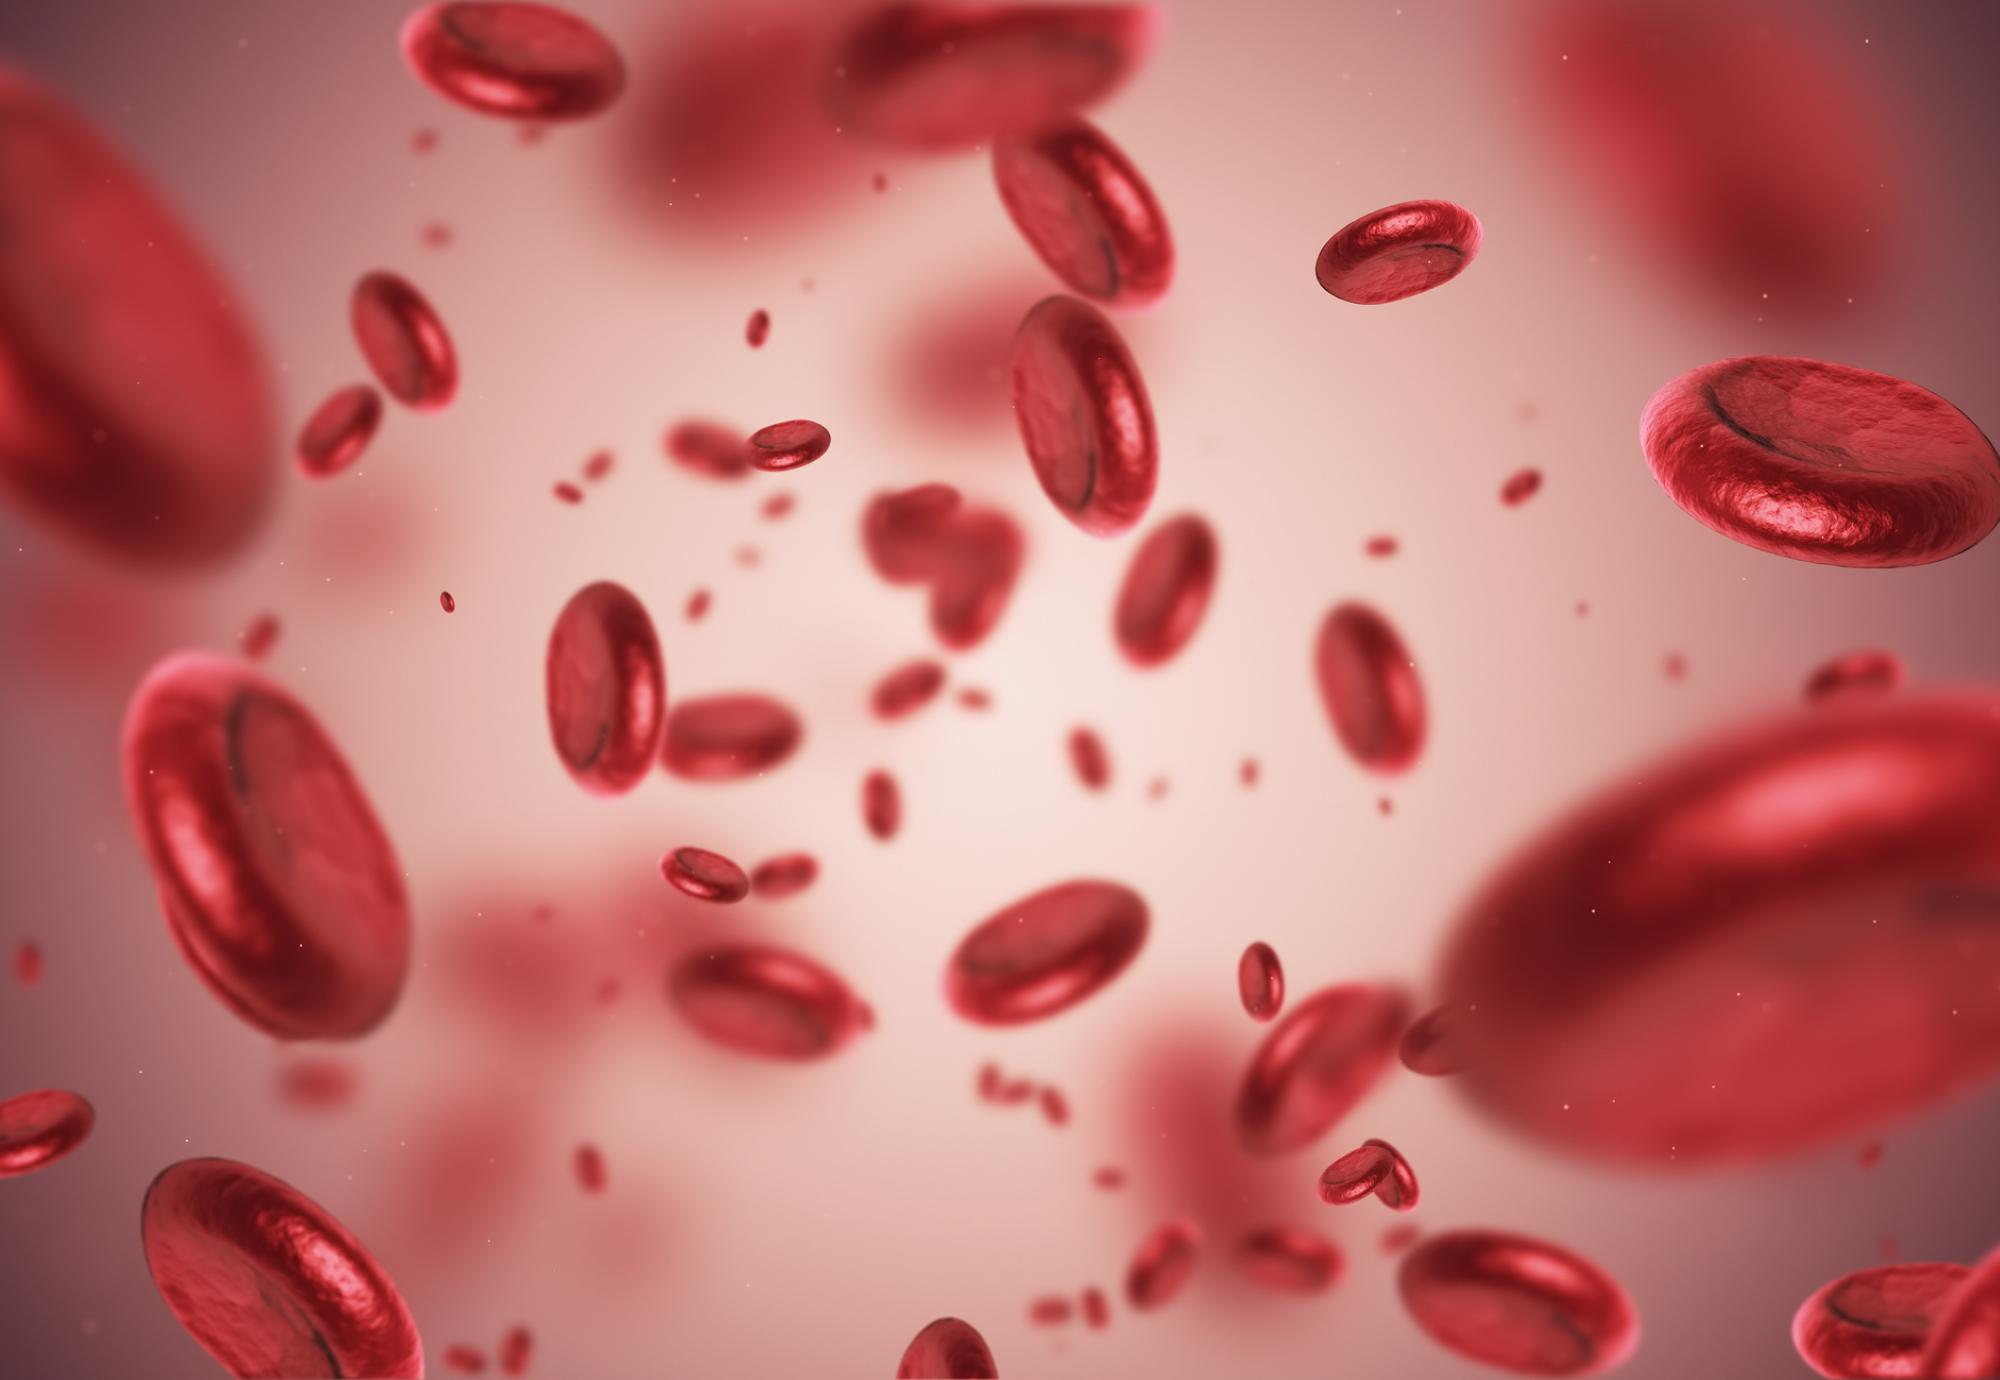 Artist impression of blood cells